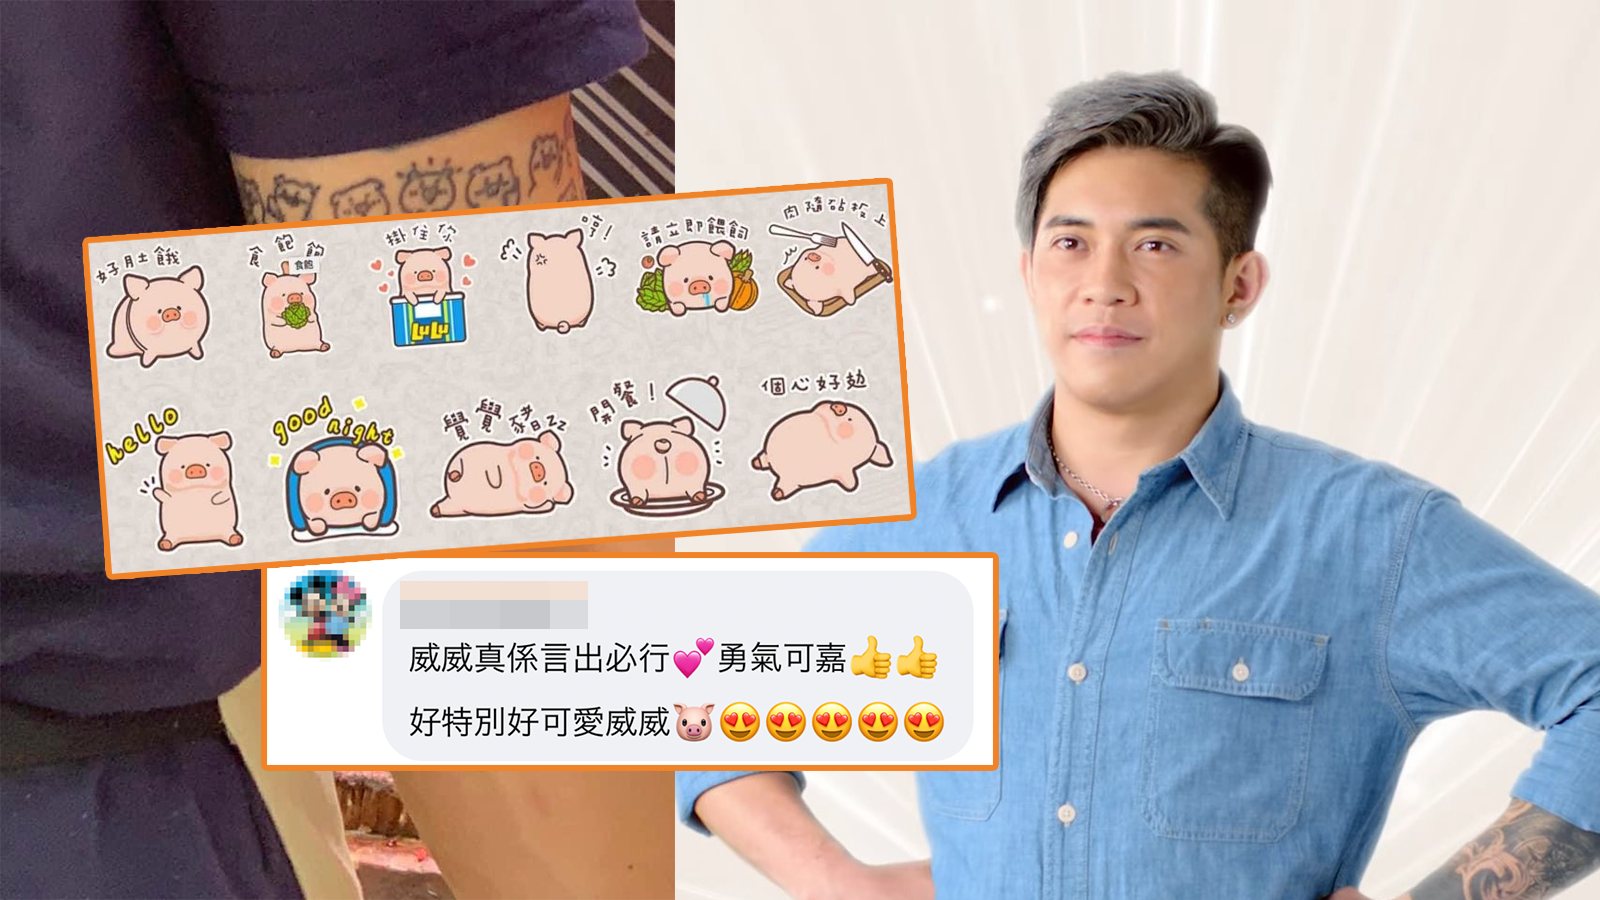 豬肉威小豬紋身挽回粉絲 被爆設計疑抄LuLu豬是「淘寶款」？